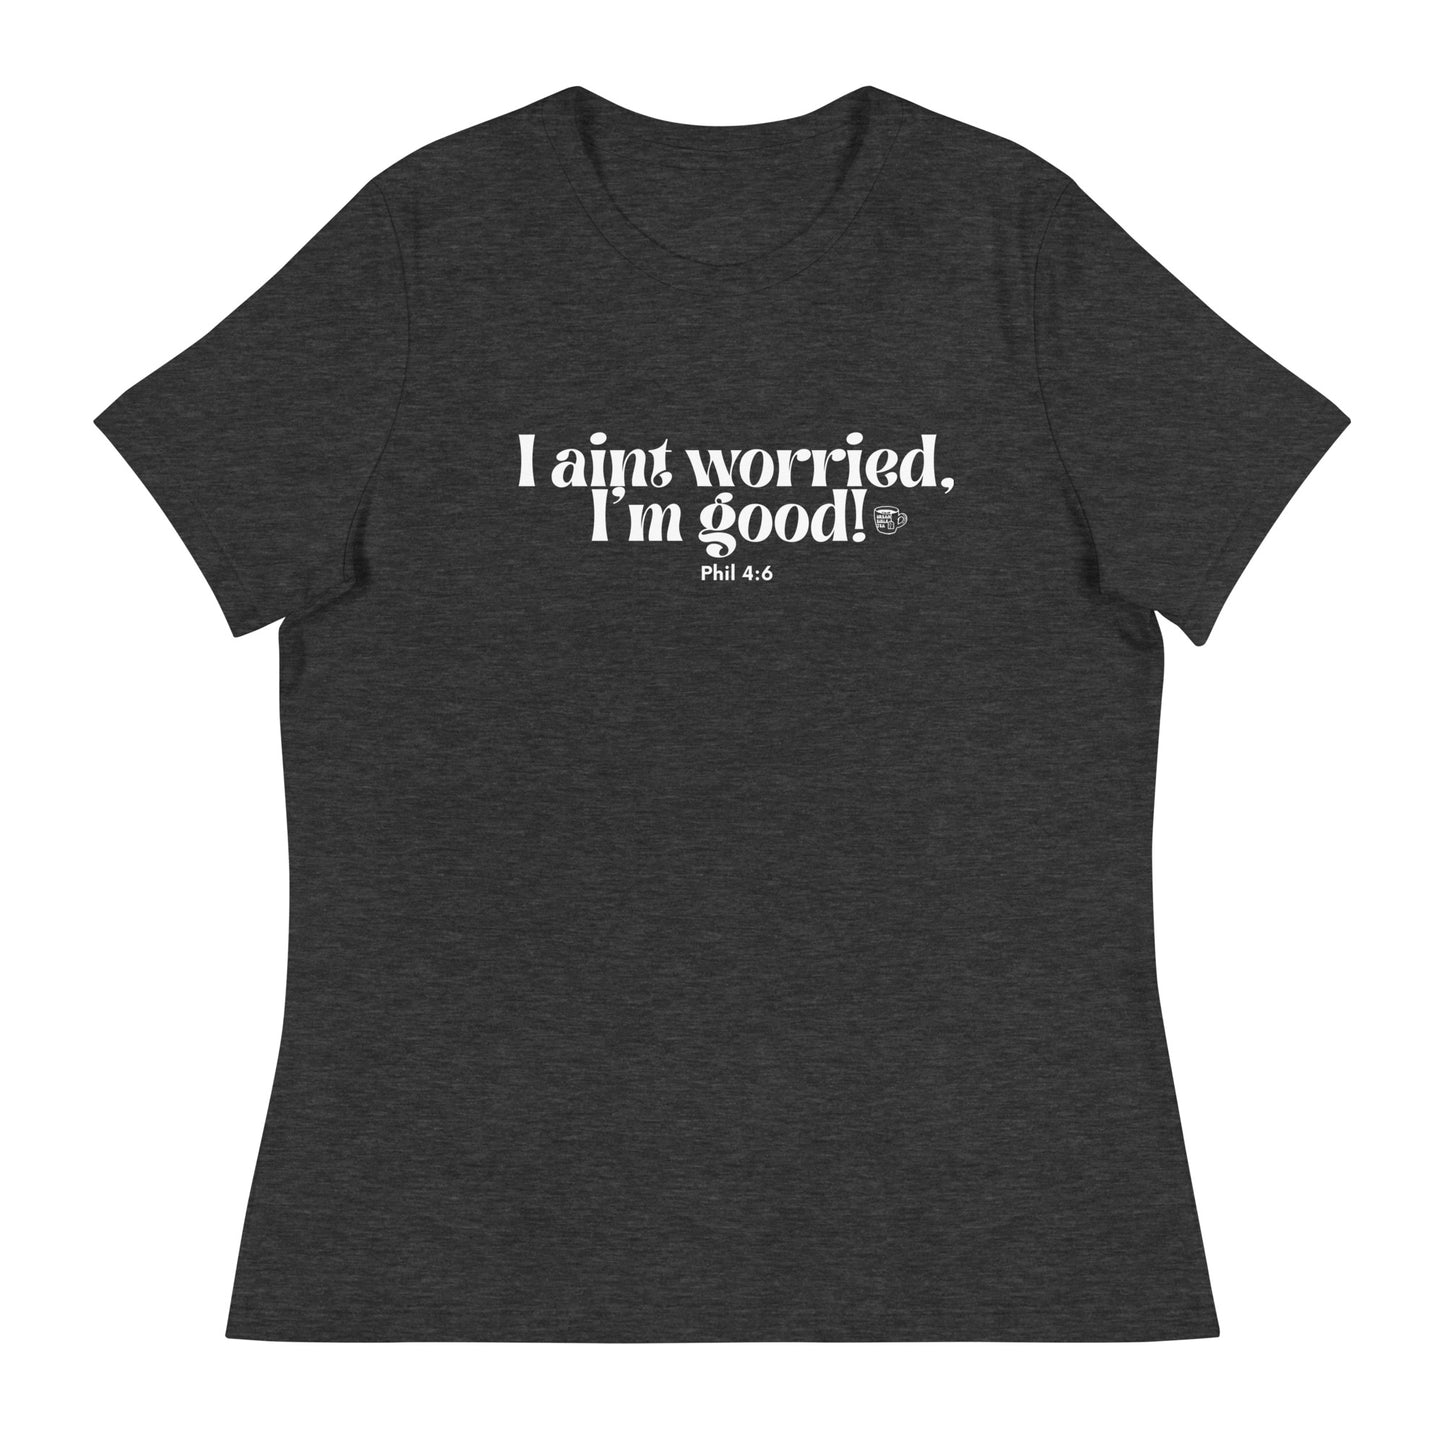 Urban Bible Tea: I Aint Worried, I'm Good Phil 4:6 Women's Relaxed T-Shirt